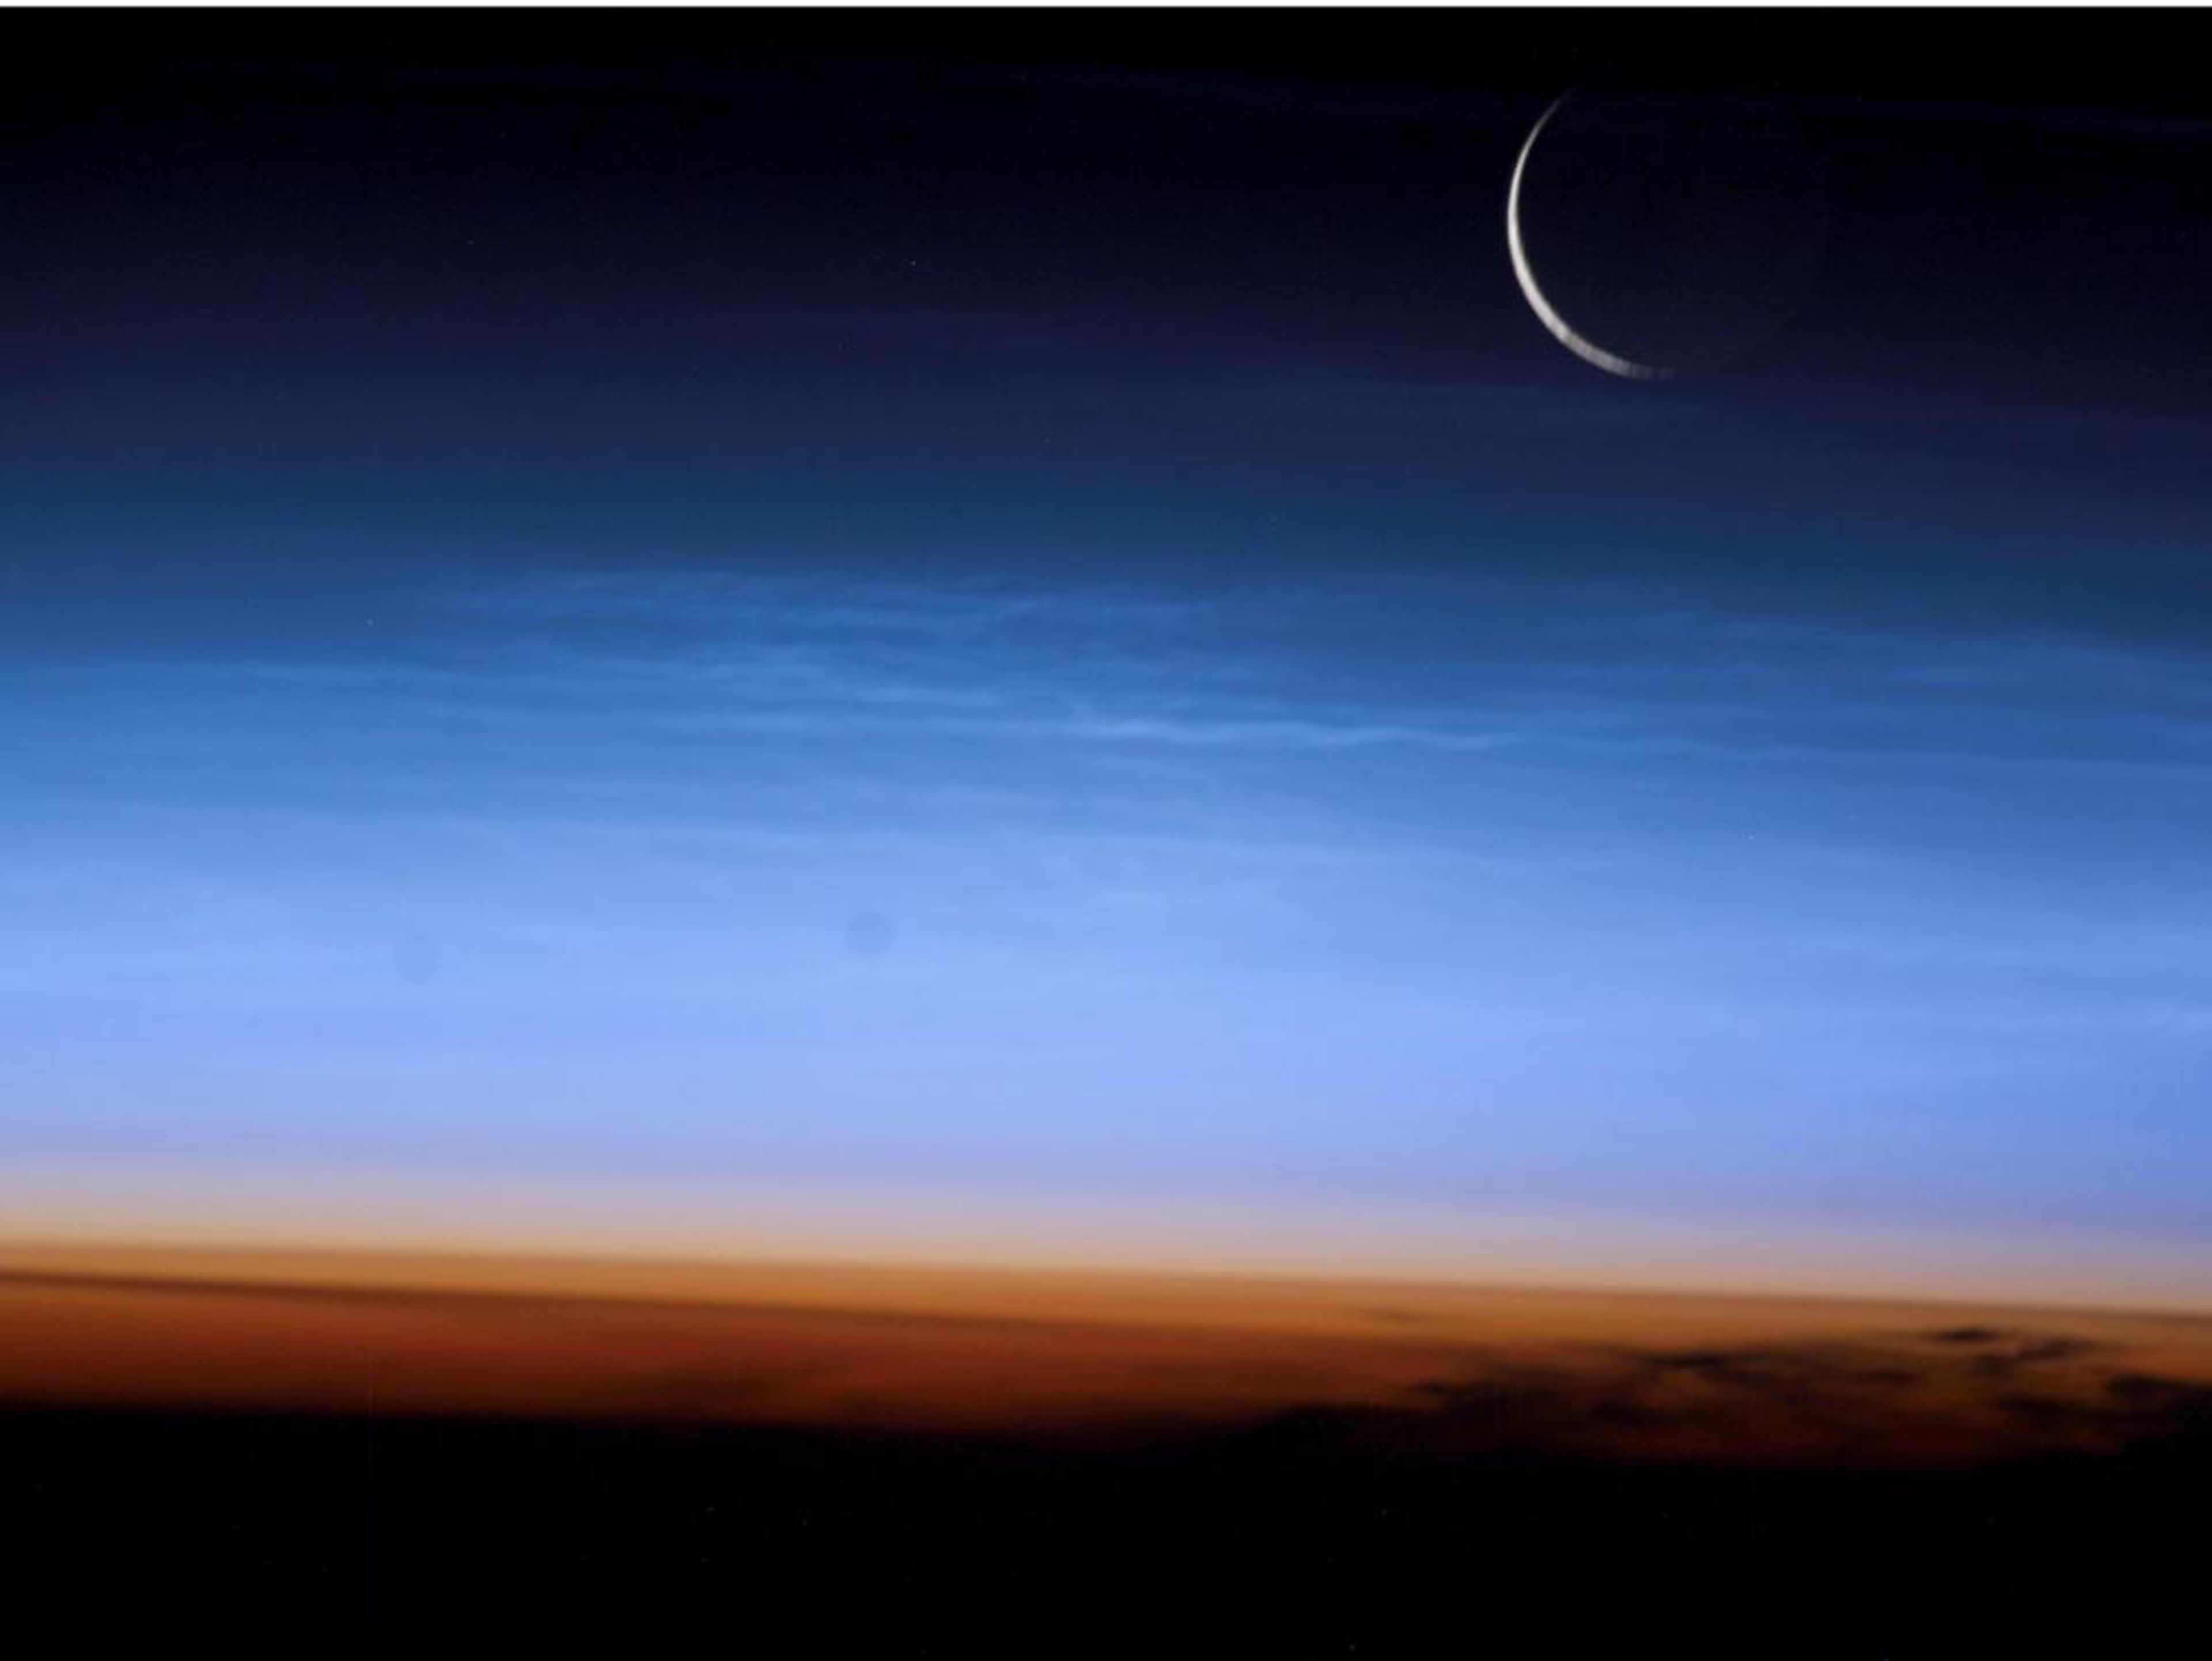 Esta imagen tomada desde la Estación Espacial Internacional muestra la estratosfera de nuestro planeta, la porción más baja y densa de la atmósfera.